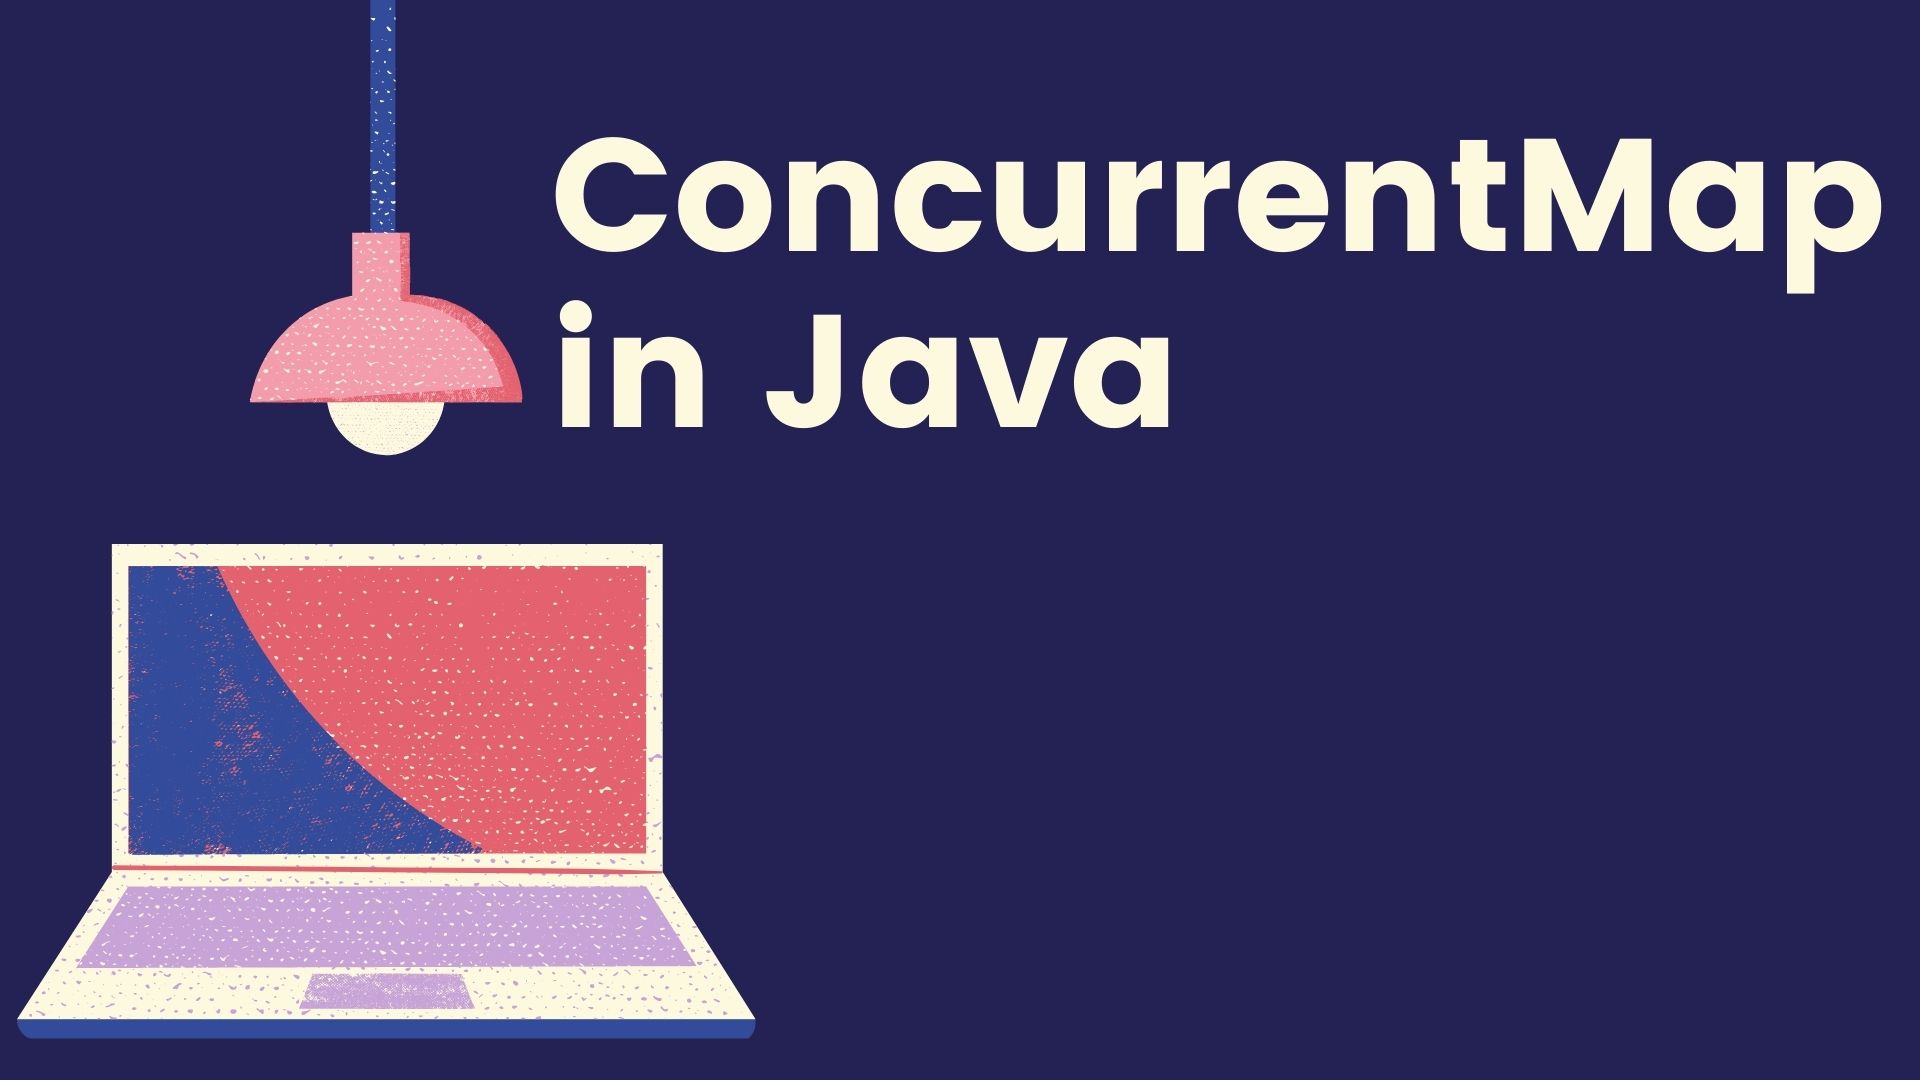 ConcurrentMap in Java